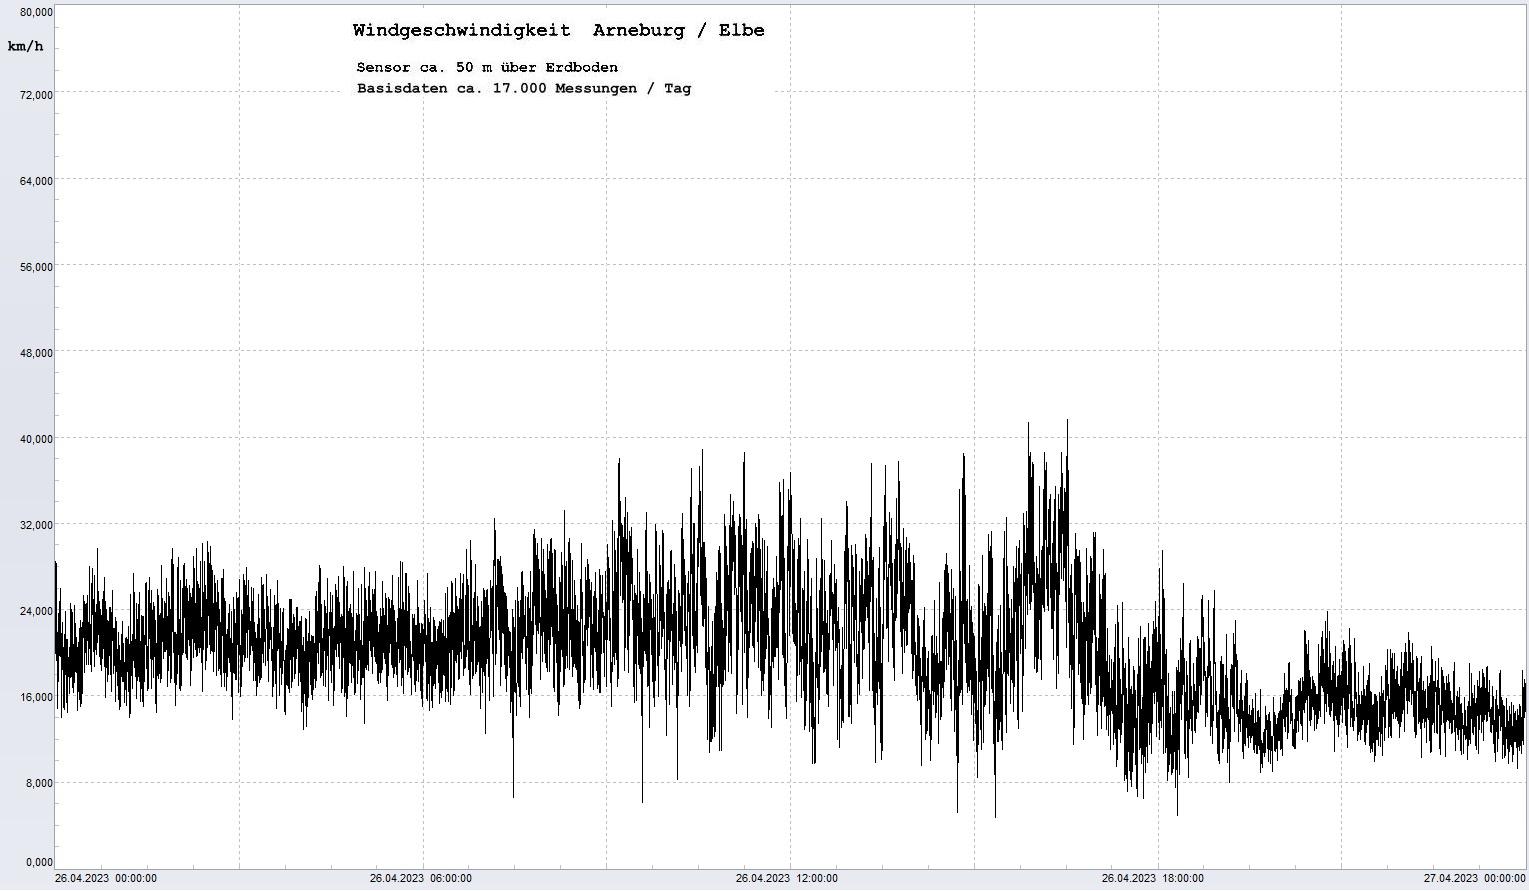 Arneburg Tages-Diagramm Winddaten, 26.04.2023
  Diagramm, Sensor auf Gebude, ca. 50 m ber Erdboden, Basis: 5s-Aufzeichnung